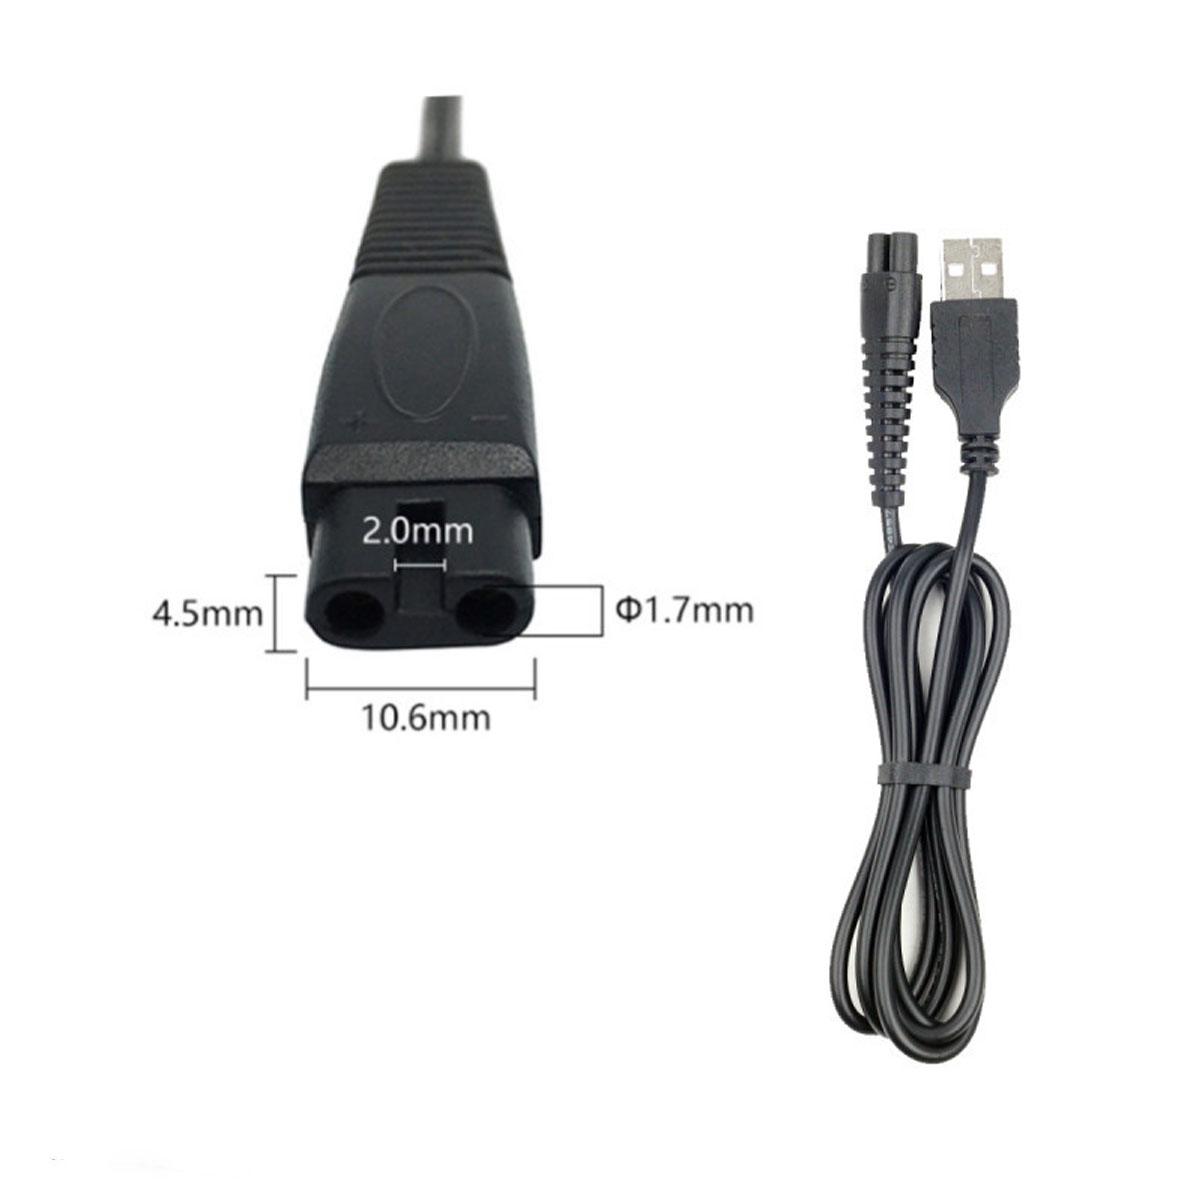 Кабель USB DL40 для зарядки электробритв, длина 1 метр, цвет черный (восьмерка)